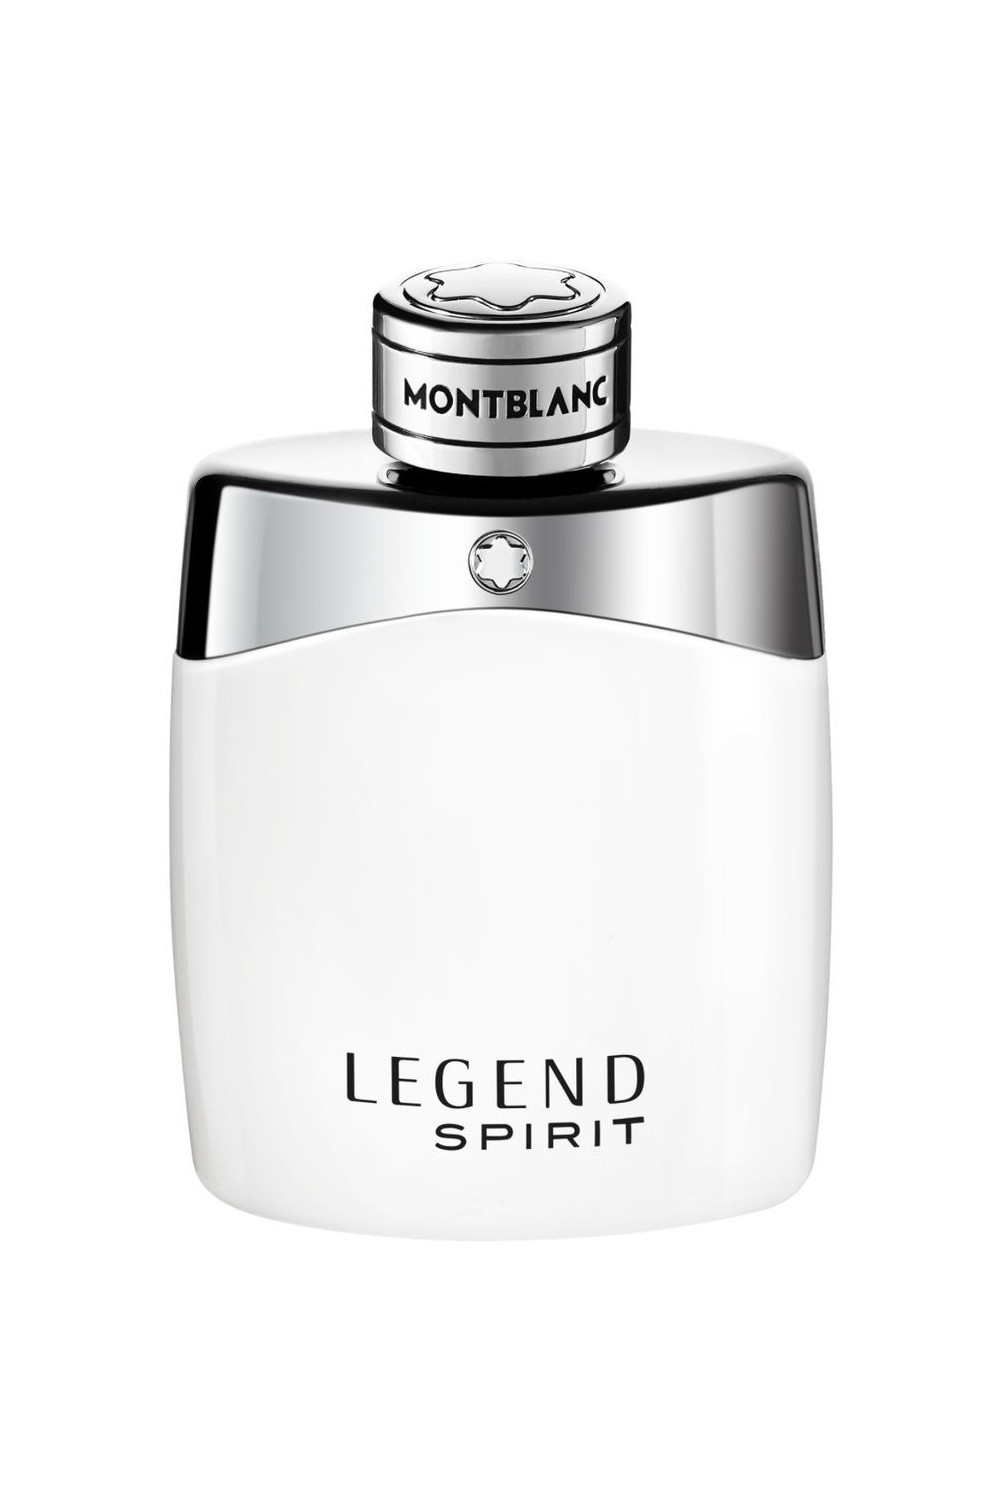 Montblanc Legend Spirit Eau De Toilette Spray 50ml